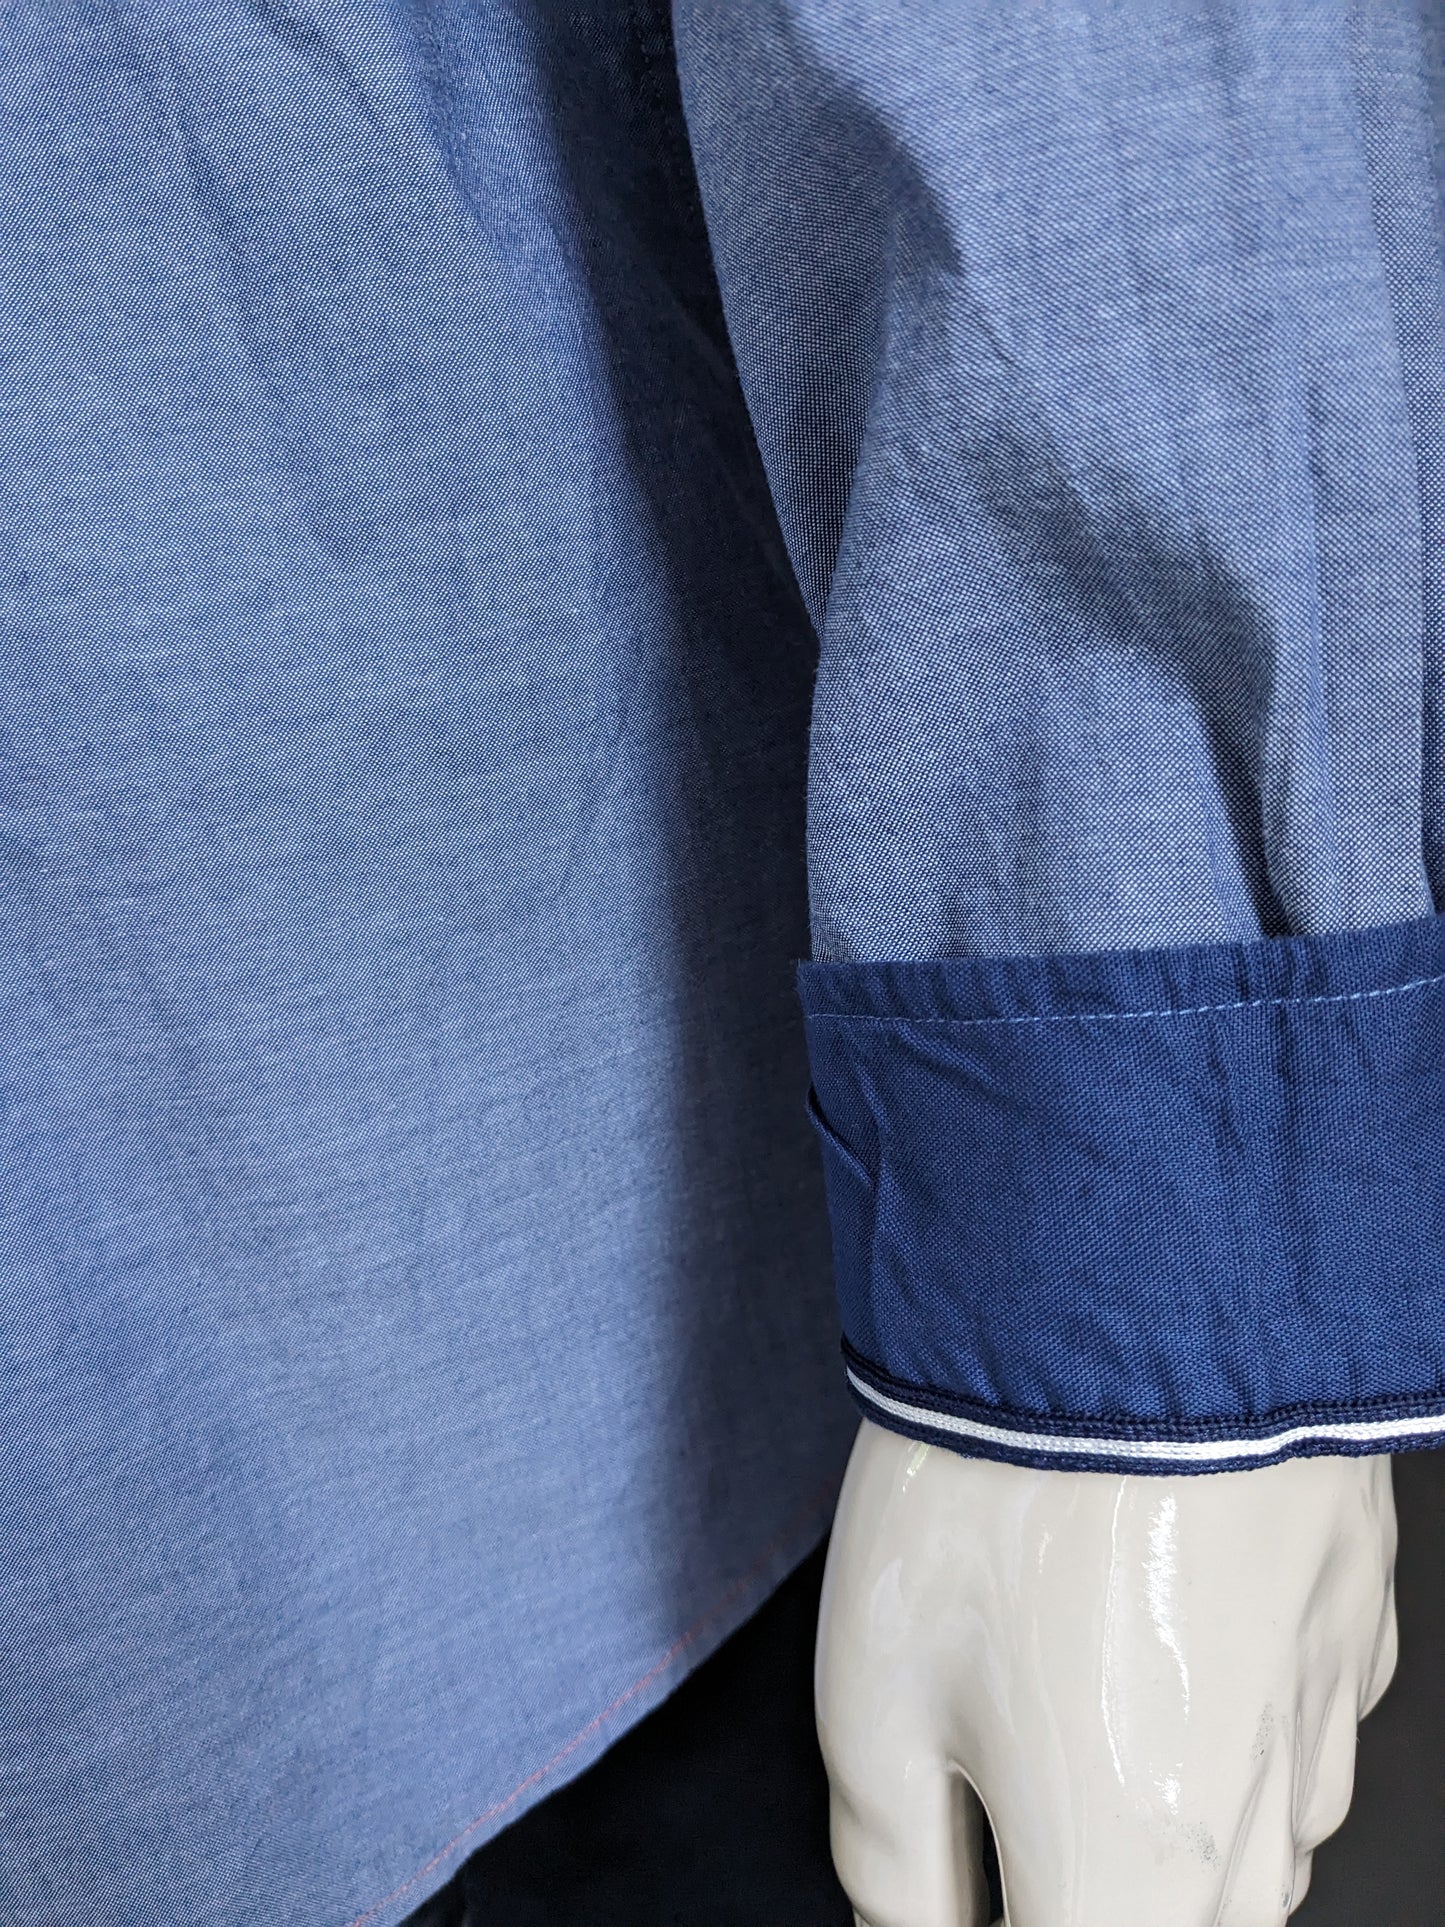 Camicia sartoriale e figlio. Blue miscelato con applicazioni. Dimensione 2xl / xxl.